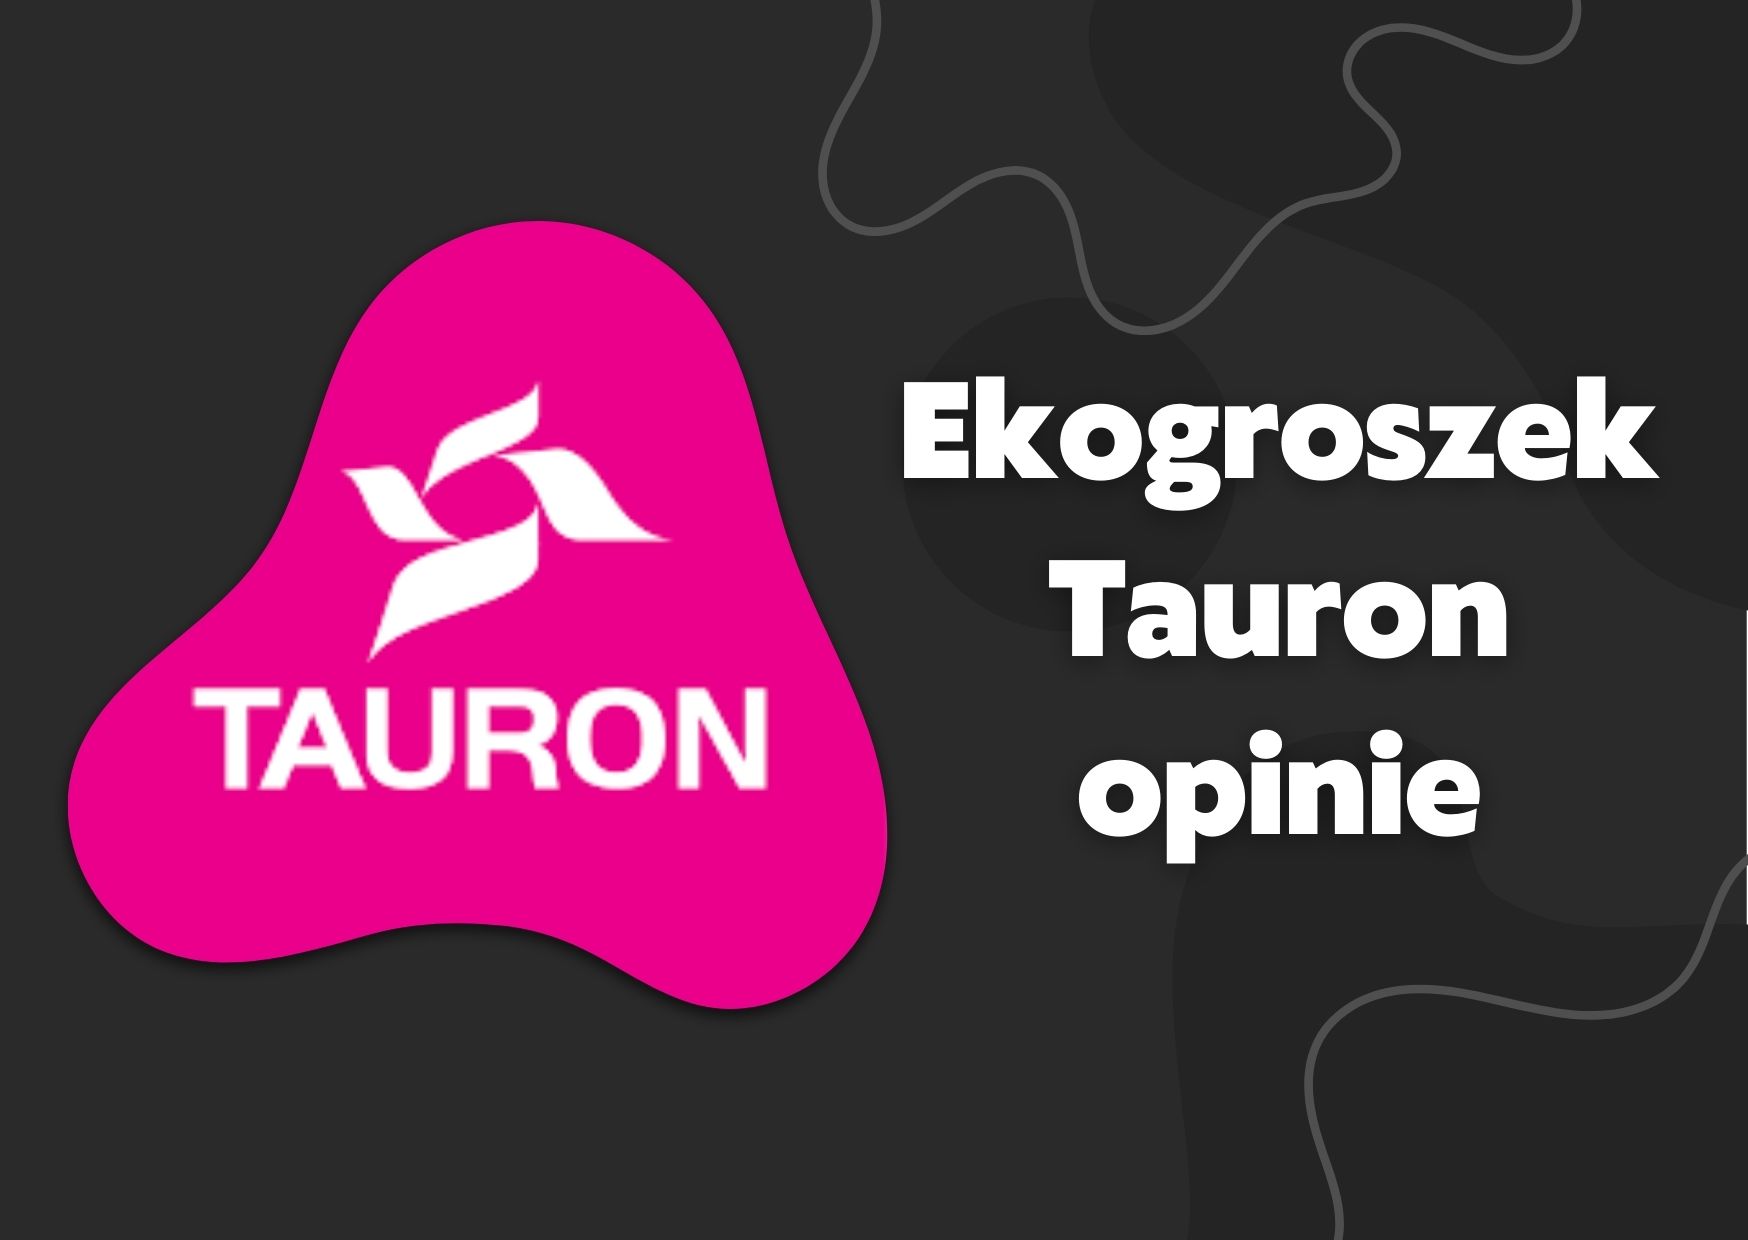 Tauron ekogroszek - testy i opinie klientów na forum, jak kupić i gdzie